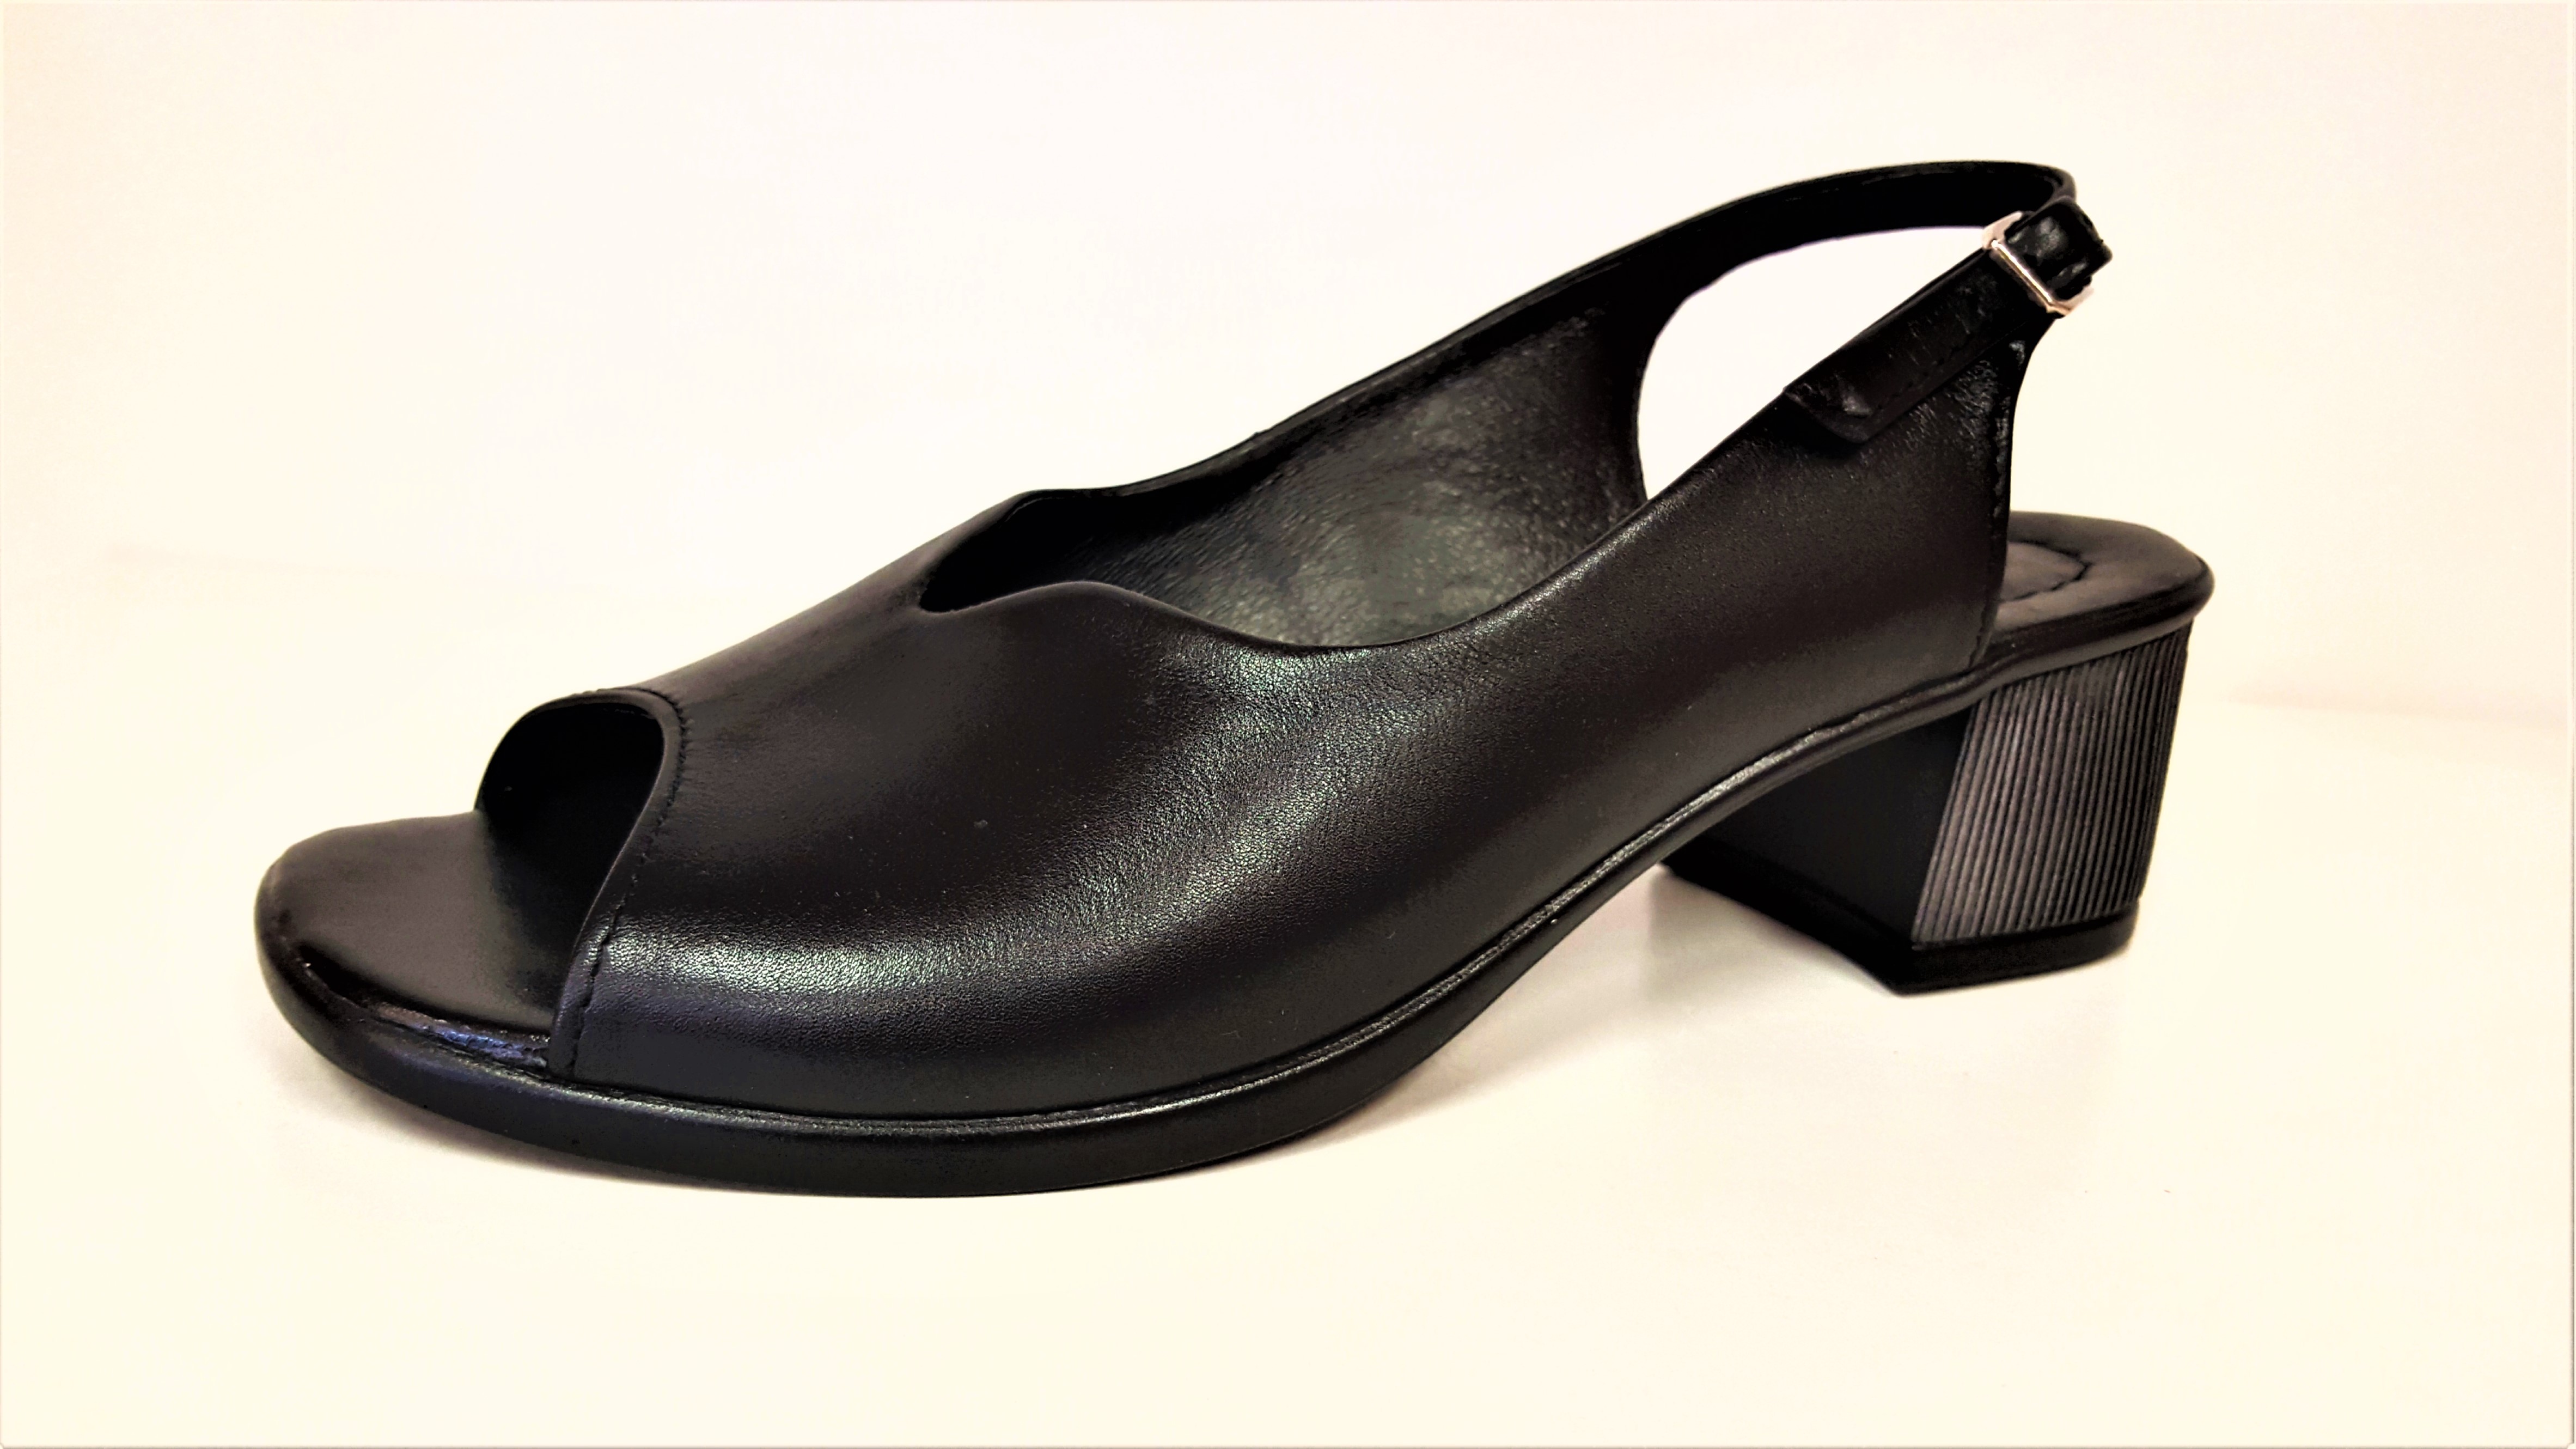 Dámská kožená elegantní černá lodička / sandál STEFANO 2618 Tabulka dámských velikostí: 41